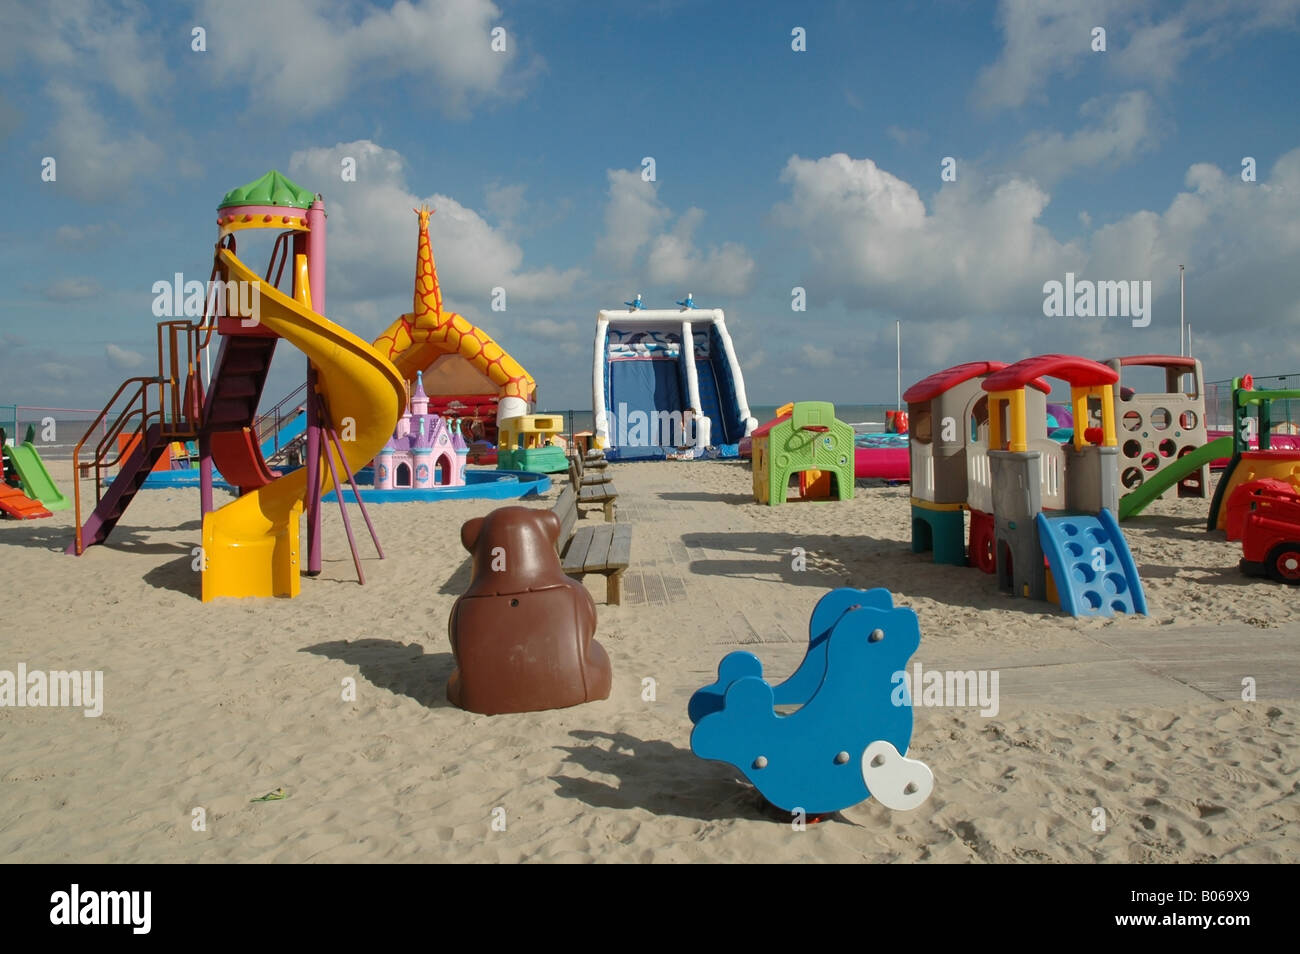 Kinderspielplatz in der Nähe von Strand von De Panne, Belgien Stockfoto